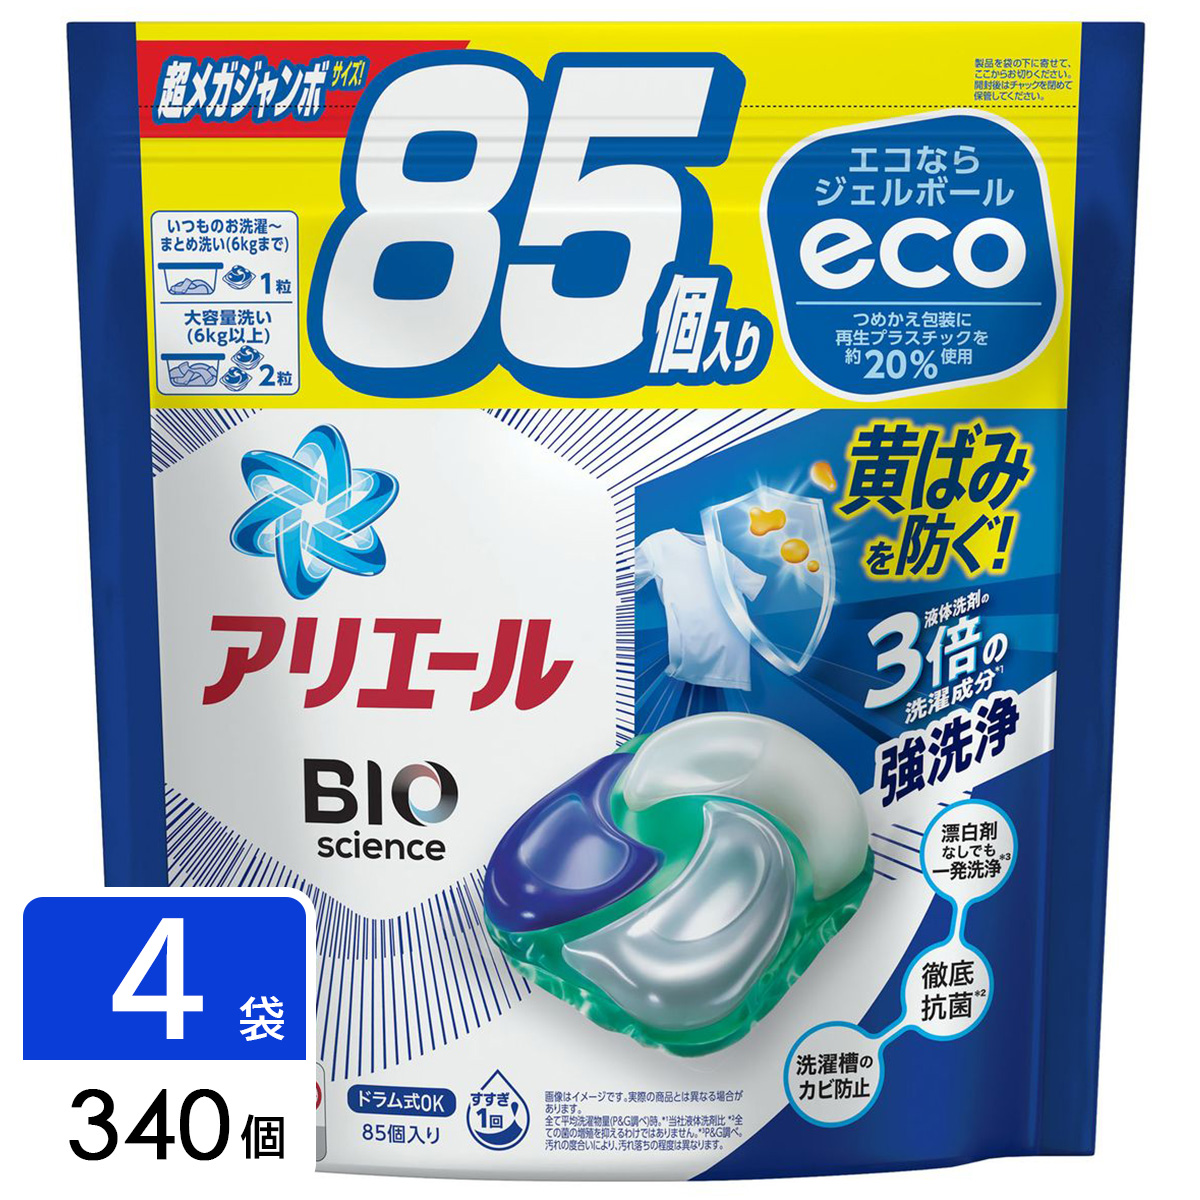 アリエール ジェルボール4D 詰め替え 洗濯洗剤 超メガジャンボサイズ 340個(85個×4袋)